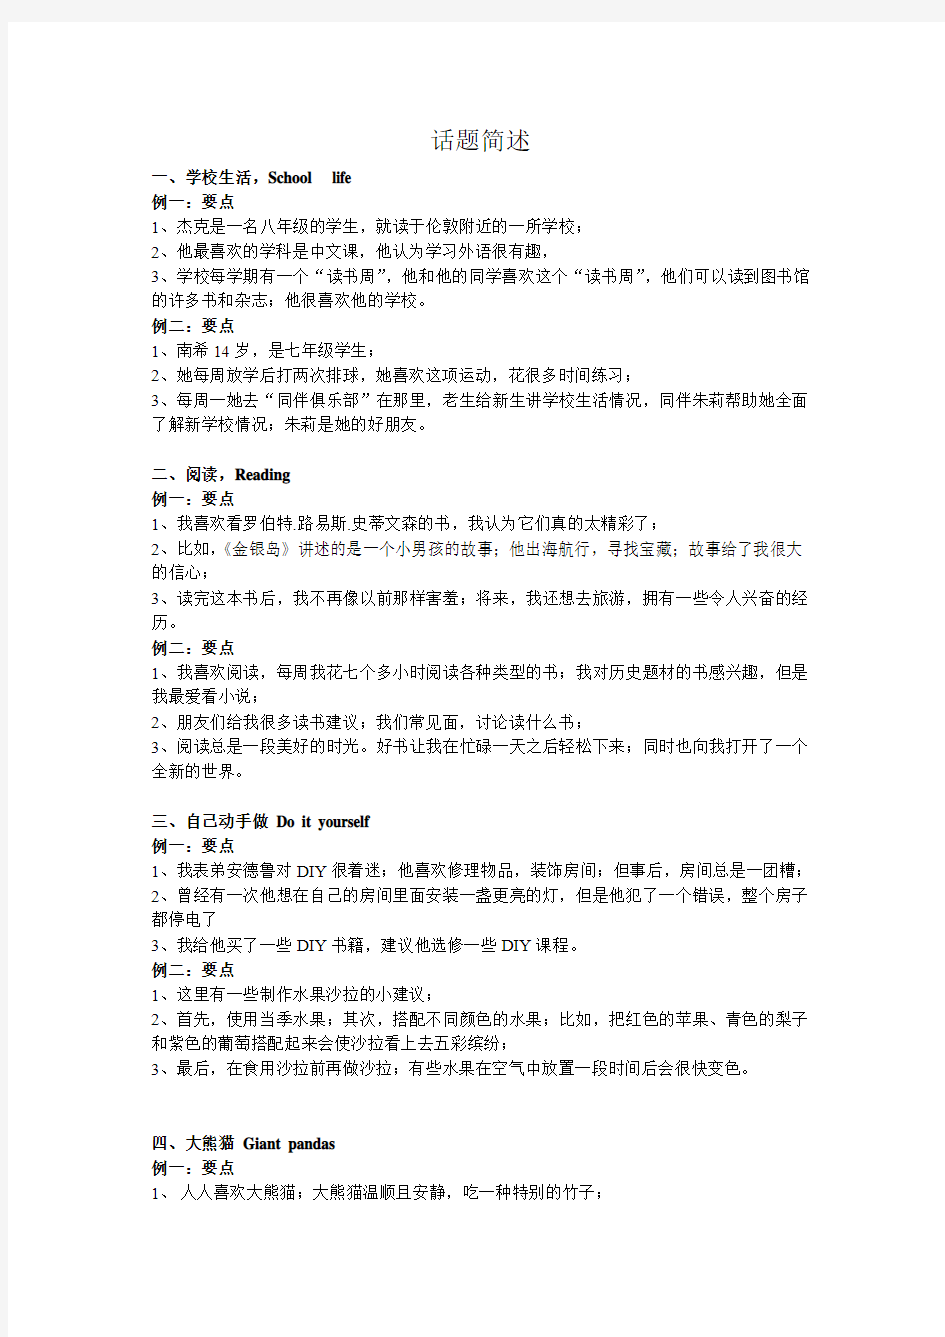 初三口语小册子(新版话题中文)(2015-2-12_21.19.28)